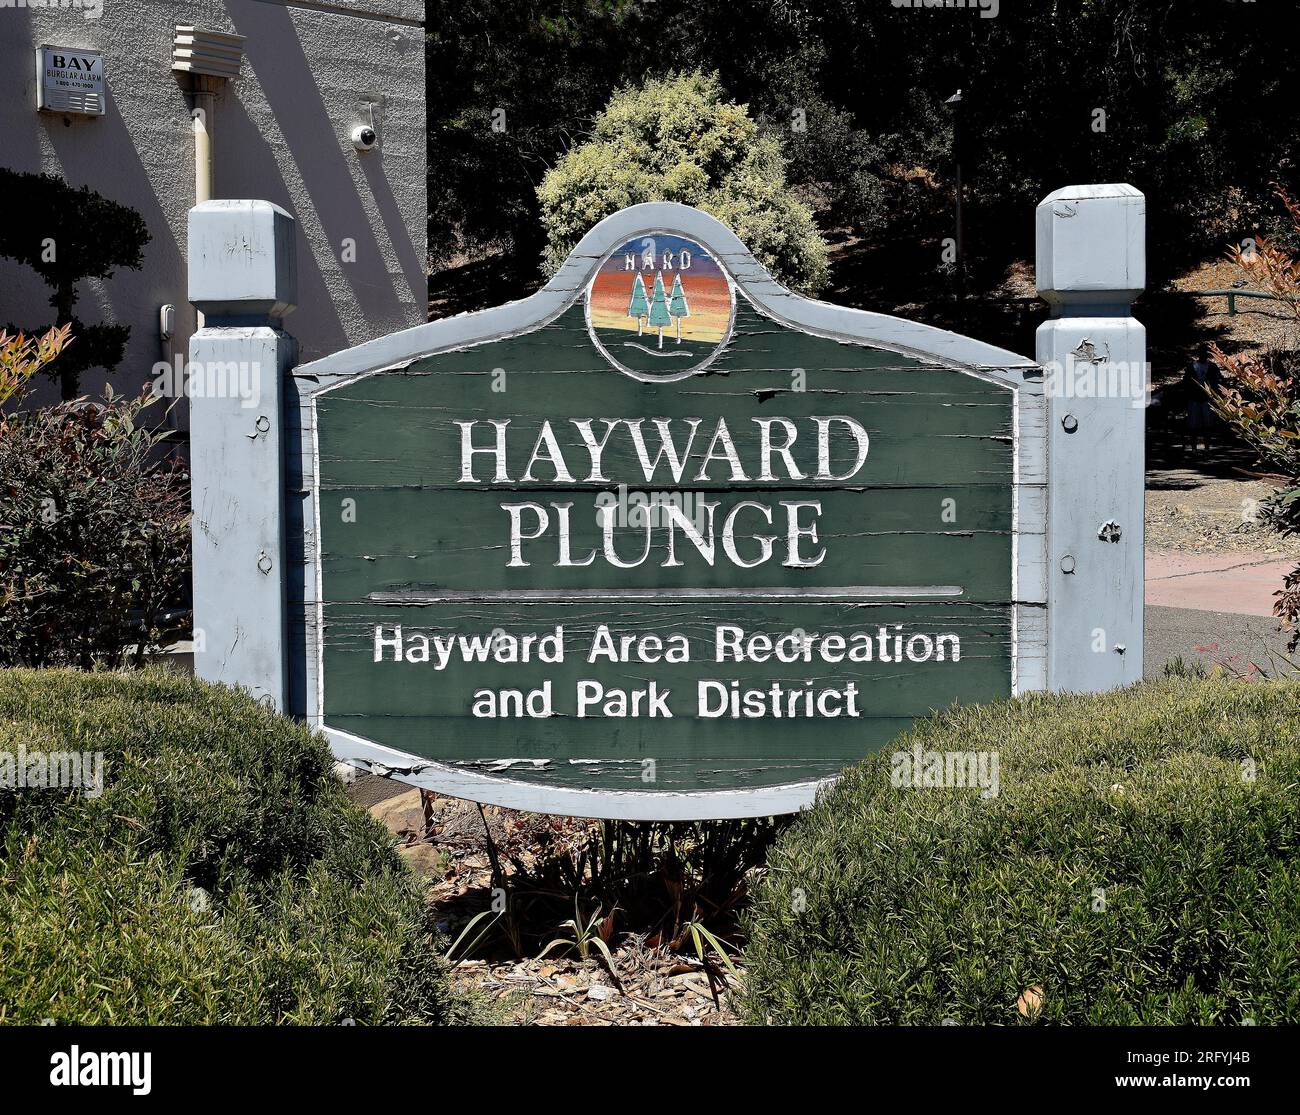 Hayward Plunge indoor swimming pool sign in Hayward, California Stock Photo